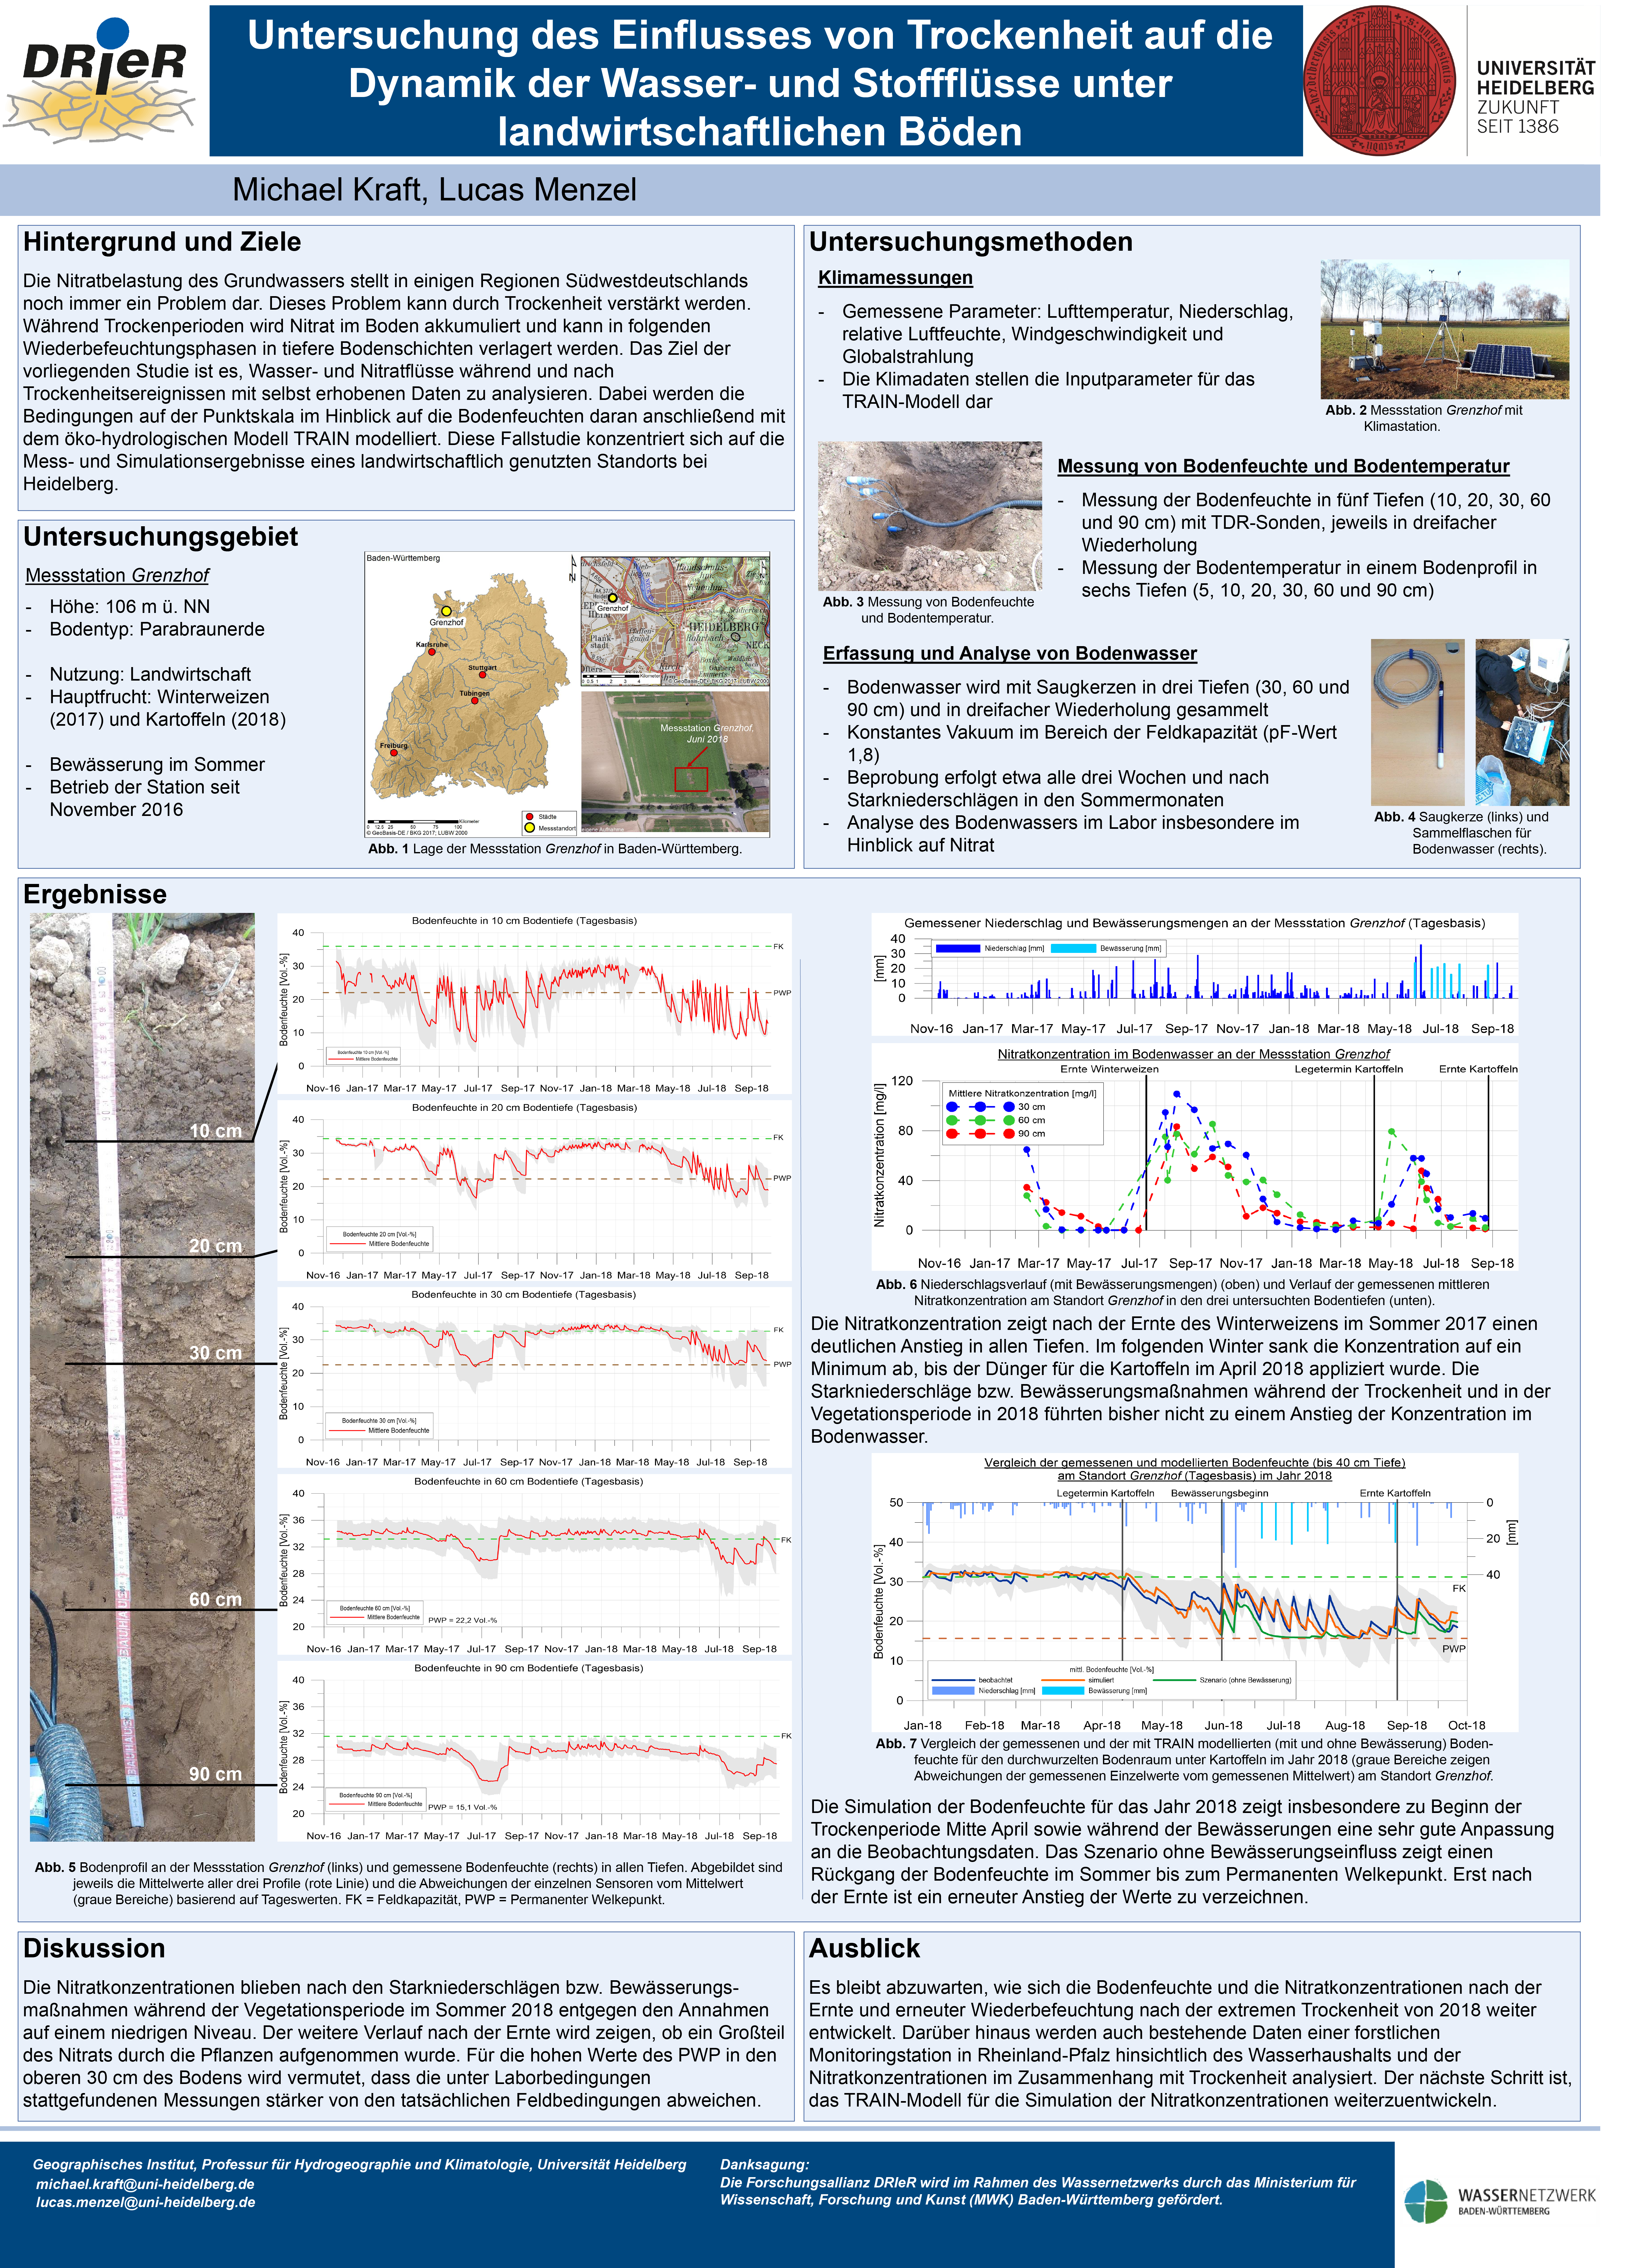 Untersuchung des Einflusses von Trockenheit auf die Dynamik der Wasser- und Stoffflüsse unter landwirtschaftlichen Böden